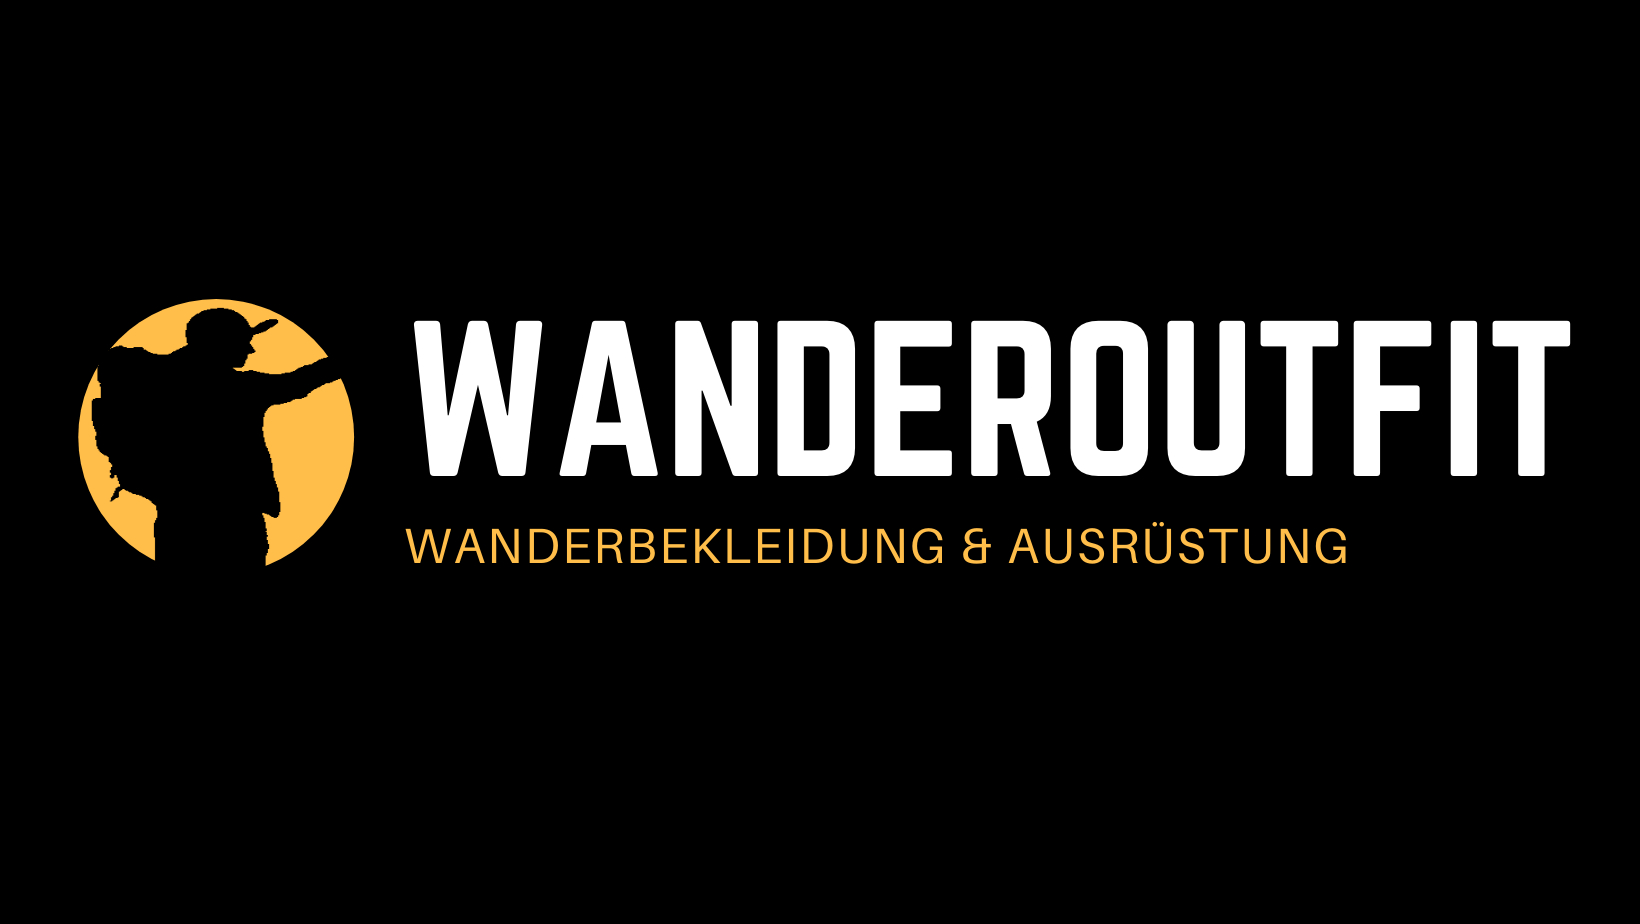 (c) Wanderoutfit.de